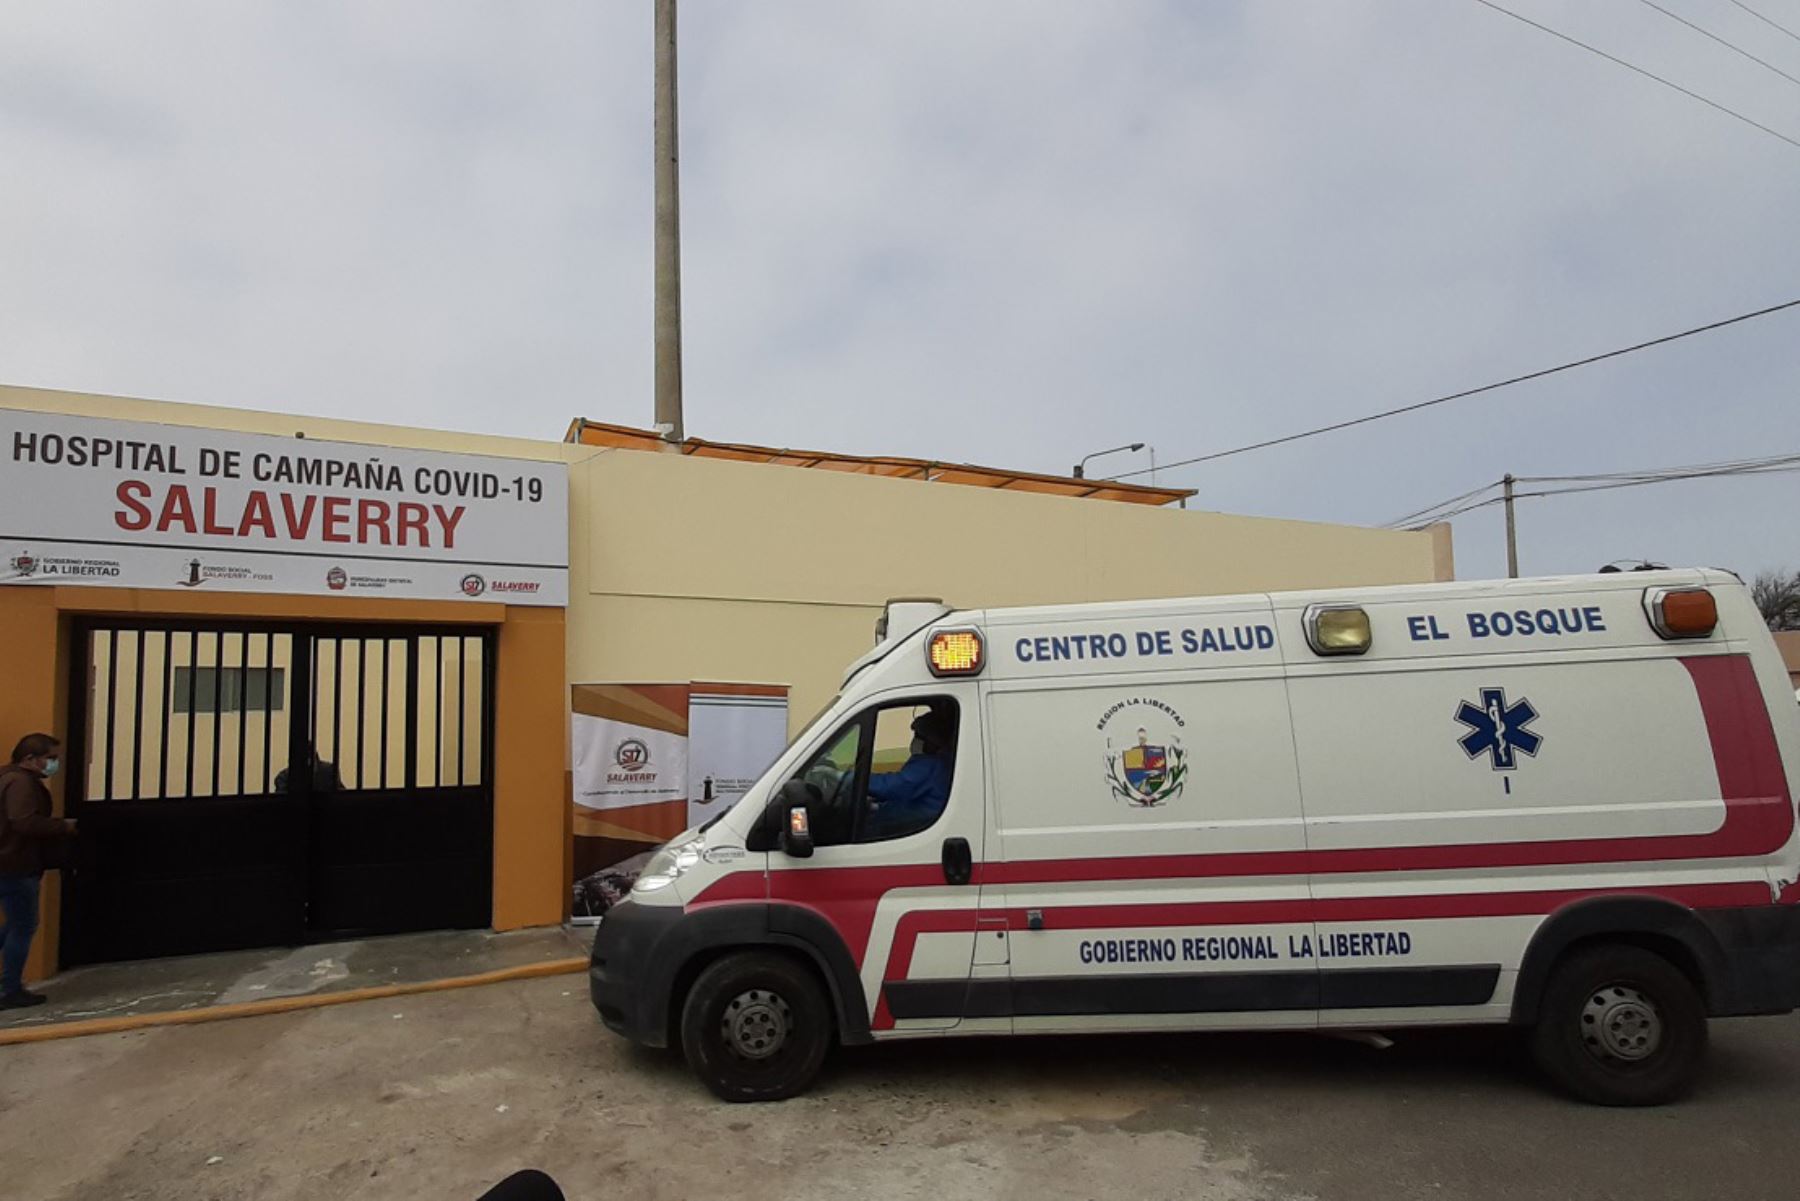 Desde el lunes recibe pacientes el hospital de campaña del distrito de Salaverry, en la región La Libertad. Foto: ANDINA/Difusión